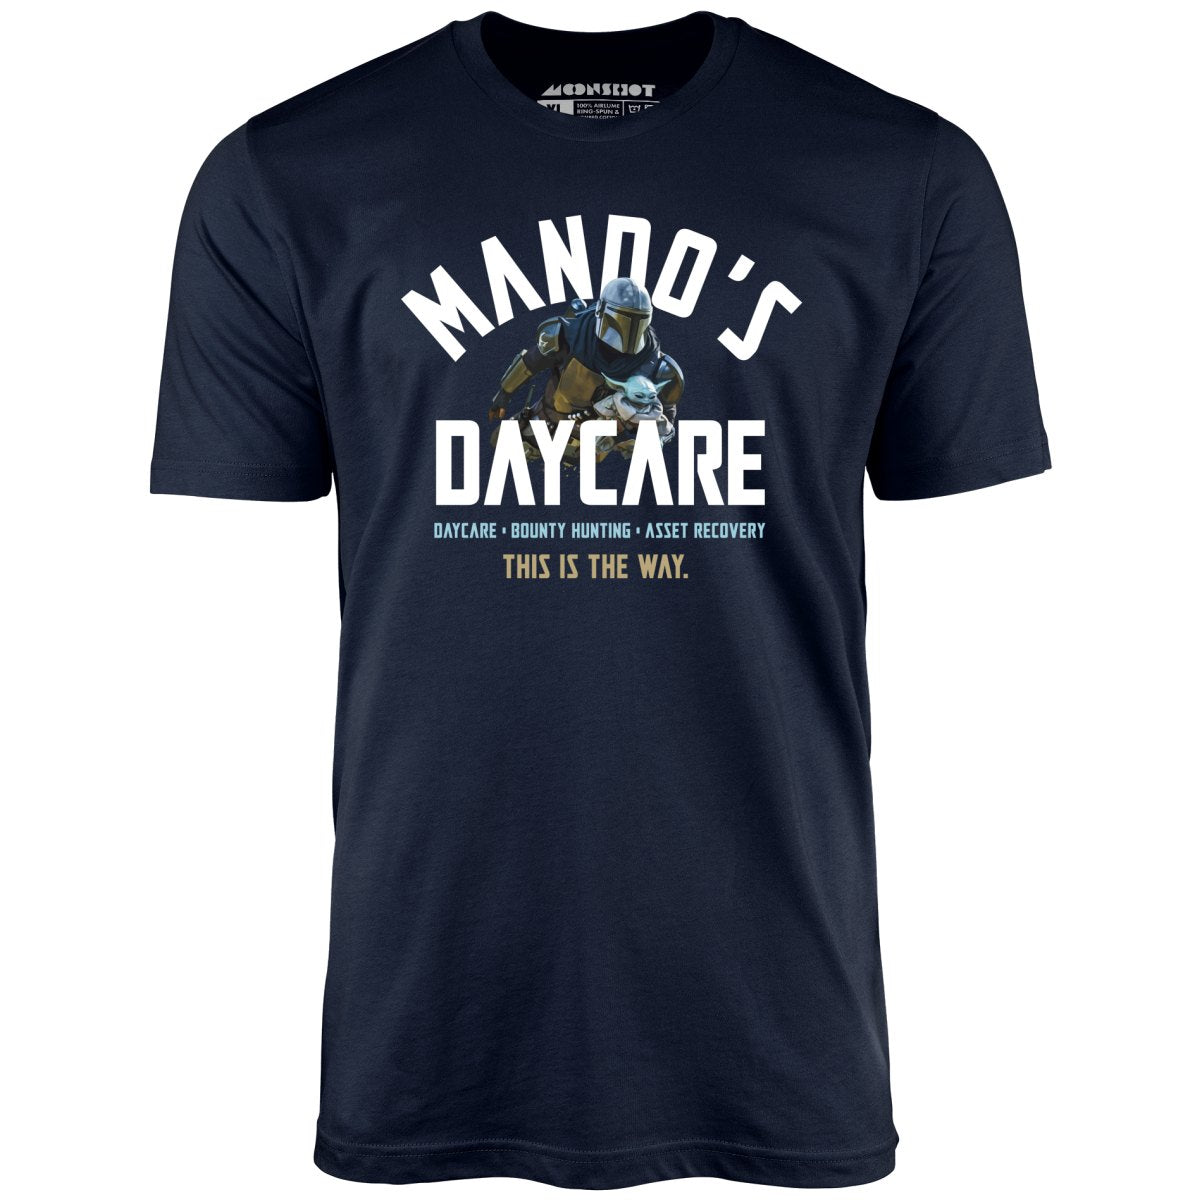 Mando's Daycare - Unisex T-Shirt